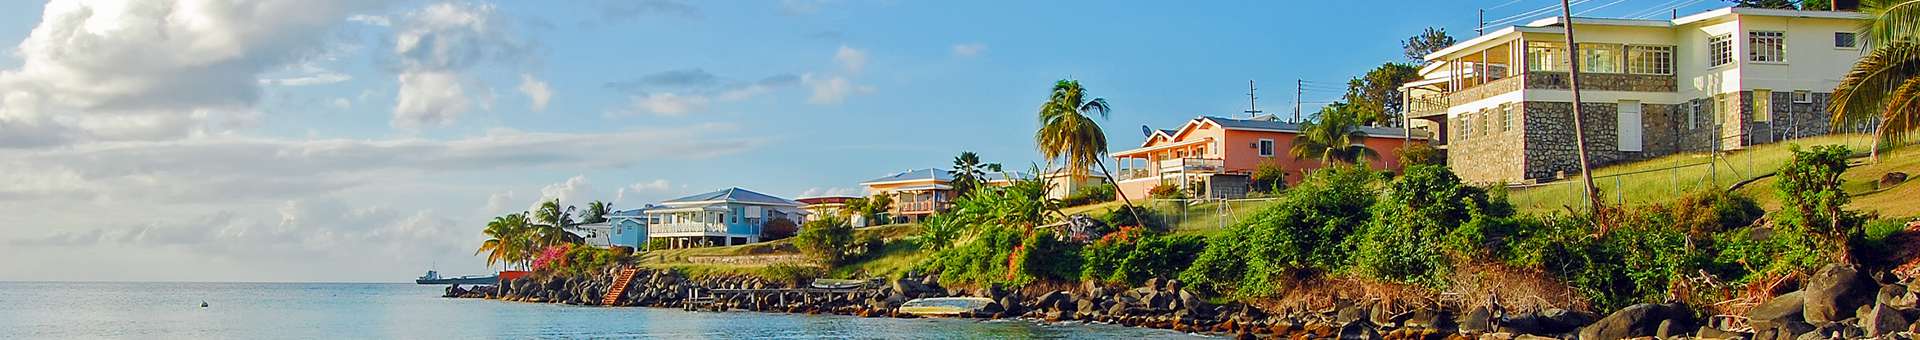 Pesquisar informações WHOIS sobre nomes de dominio em Grenada